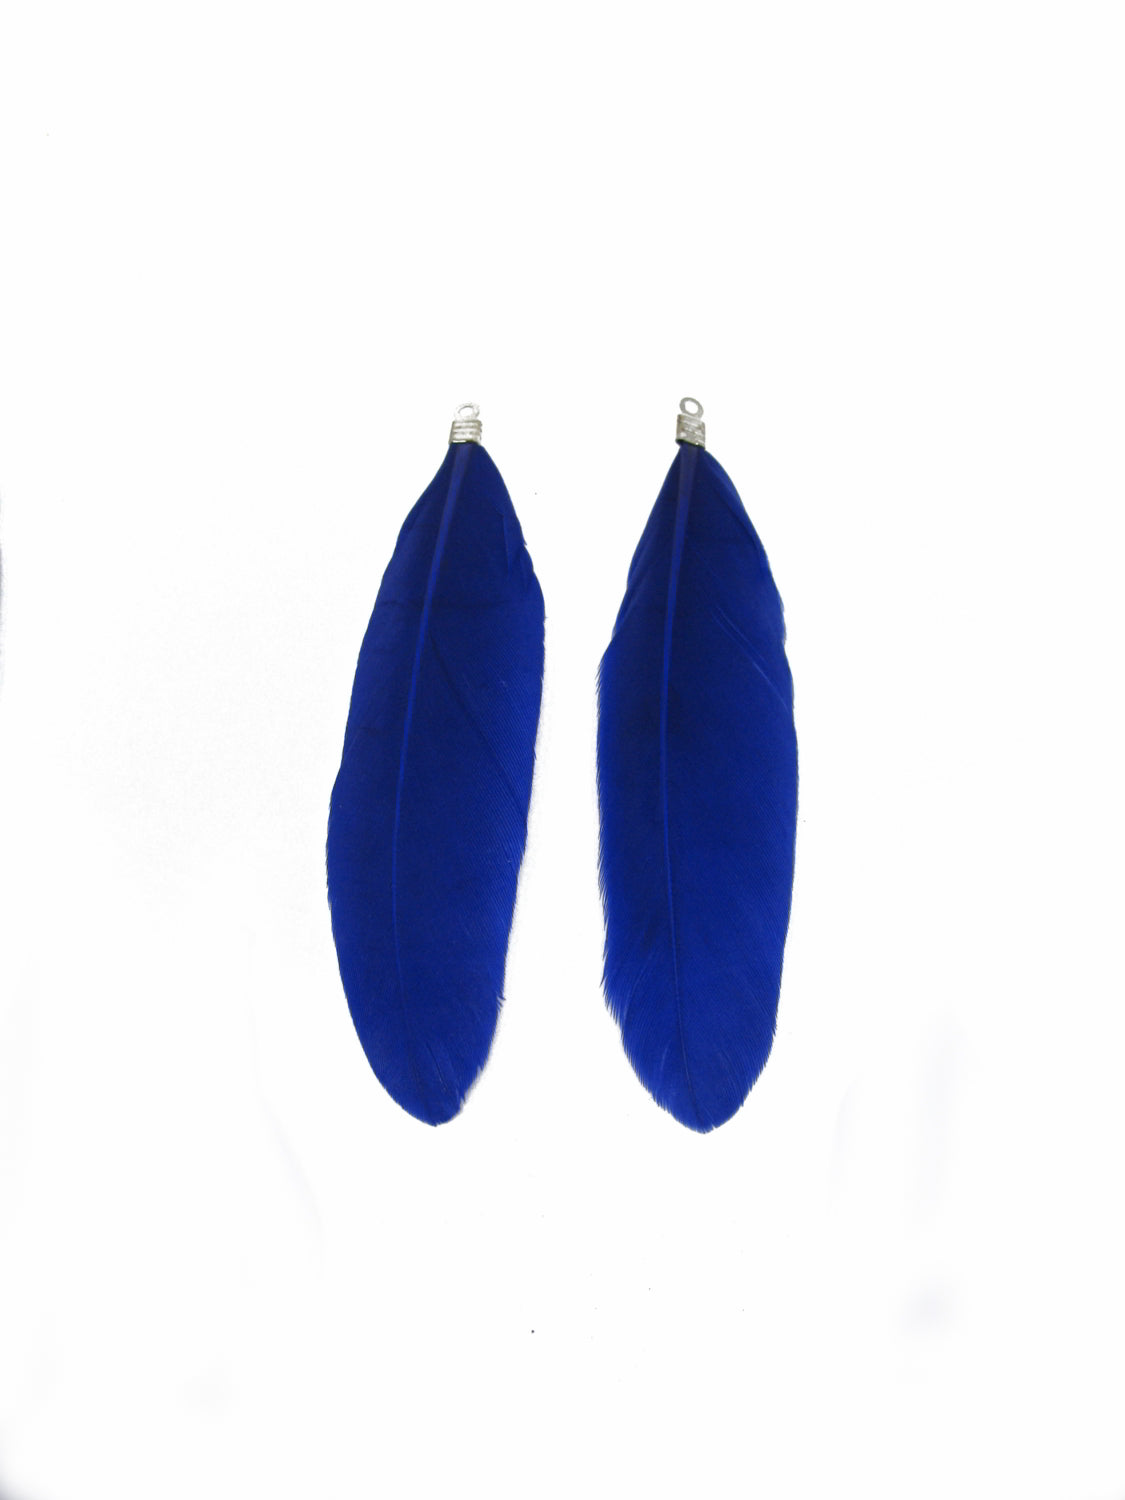 2 Anhänger echte Feder Blau ca 7,2cm b. 7,8 cm, Perlen basteln Indianer, Perlen